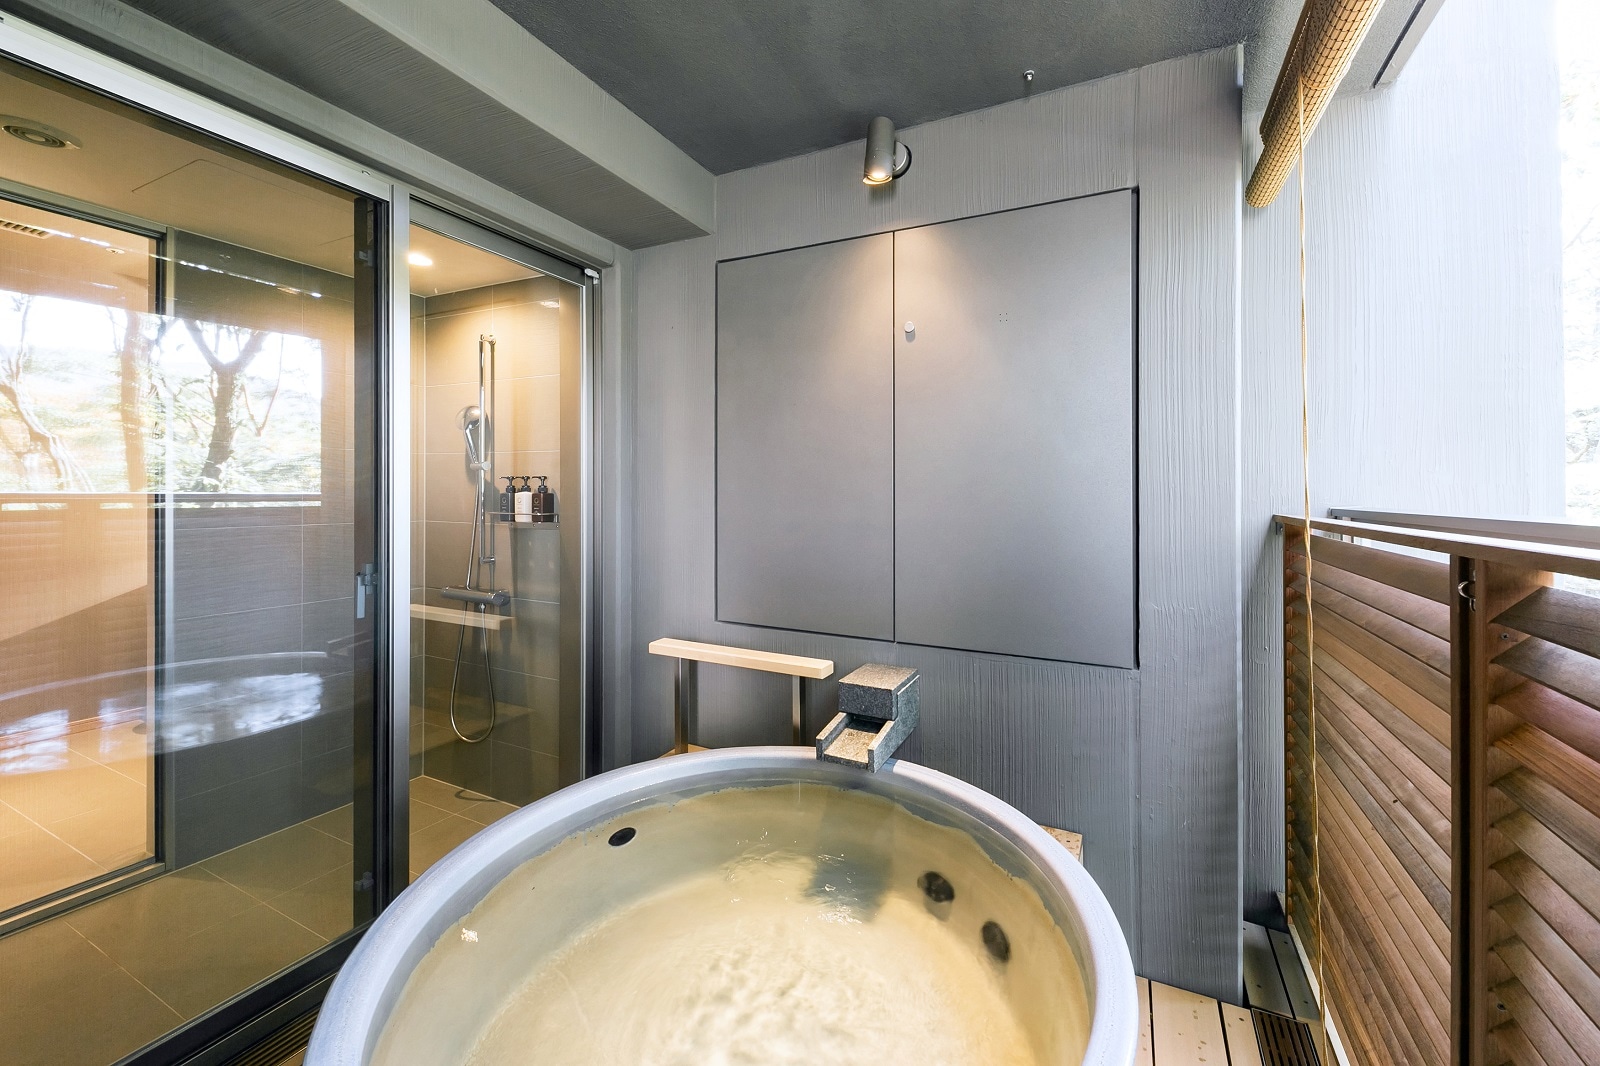 ห้องอาบน้ำกลางแจ้งแบบดีลักซ์สไตล์ญี่ปุ่นและตะวันตกริมทะเลสาบ